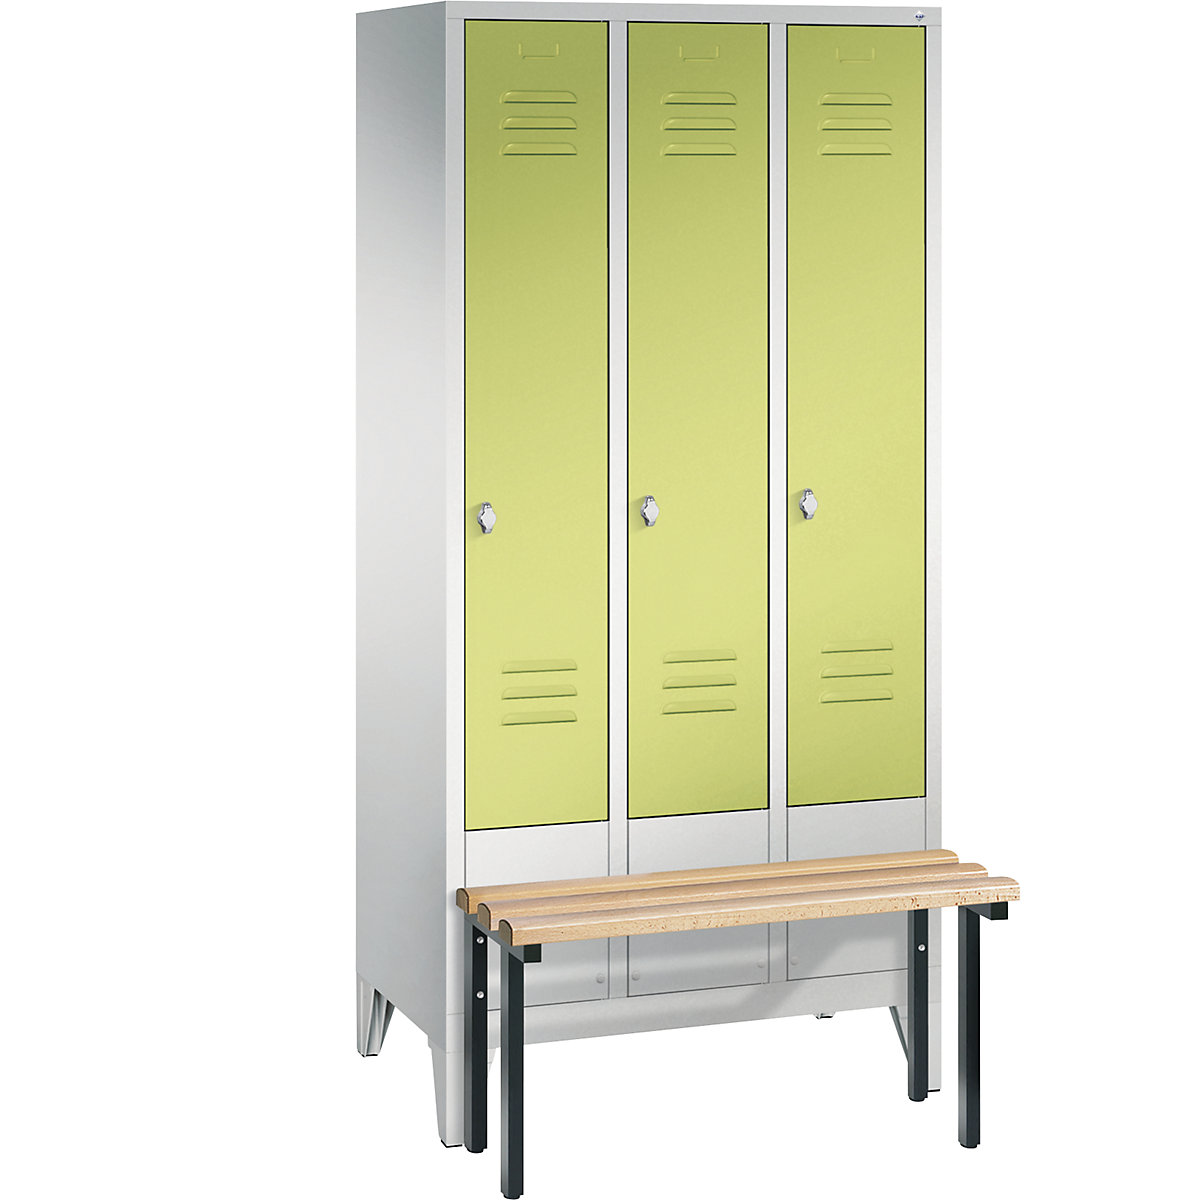 Garderobna omara CLASSIC s klopjo – C+P, 3 predelki, širina 300 mm/predelek, svetlo sive / rumeno zelene barve-3